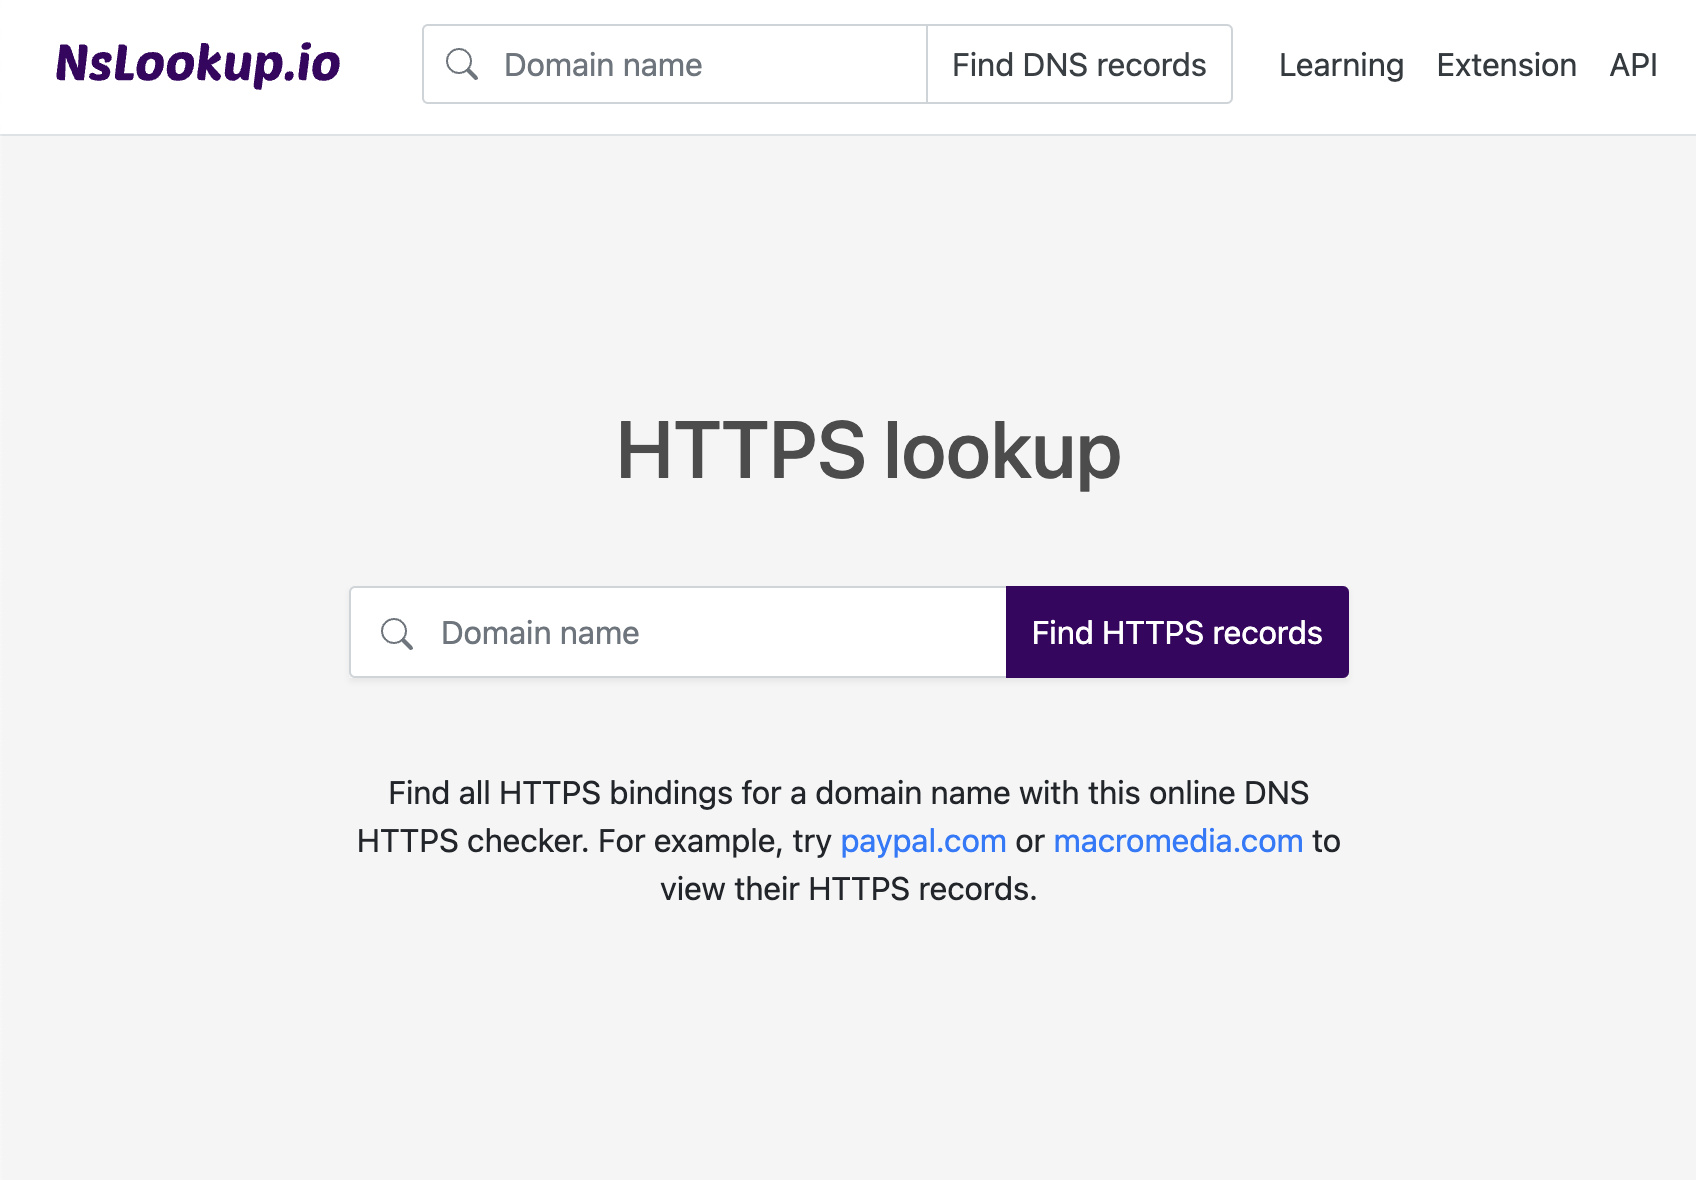 Open the HTTPS lookup tool